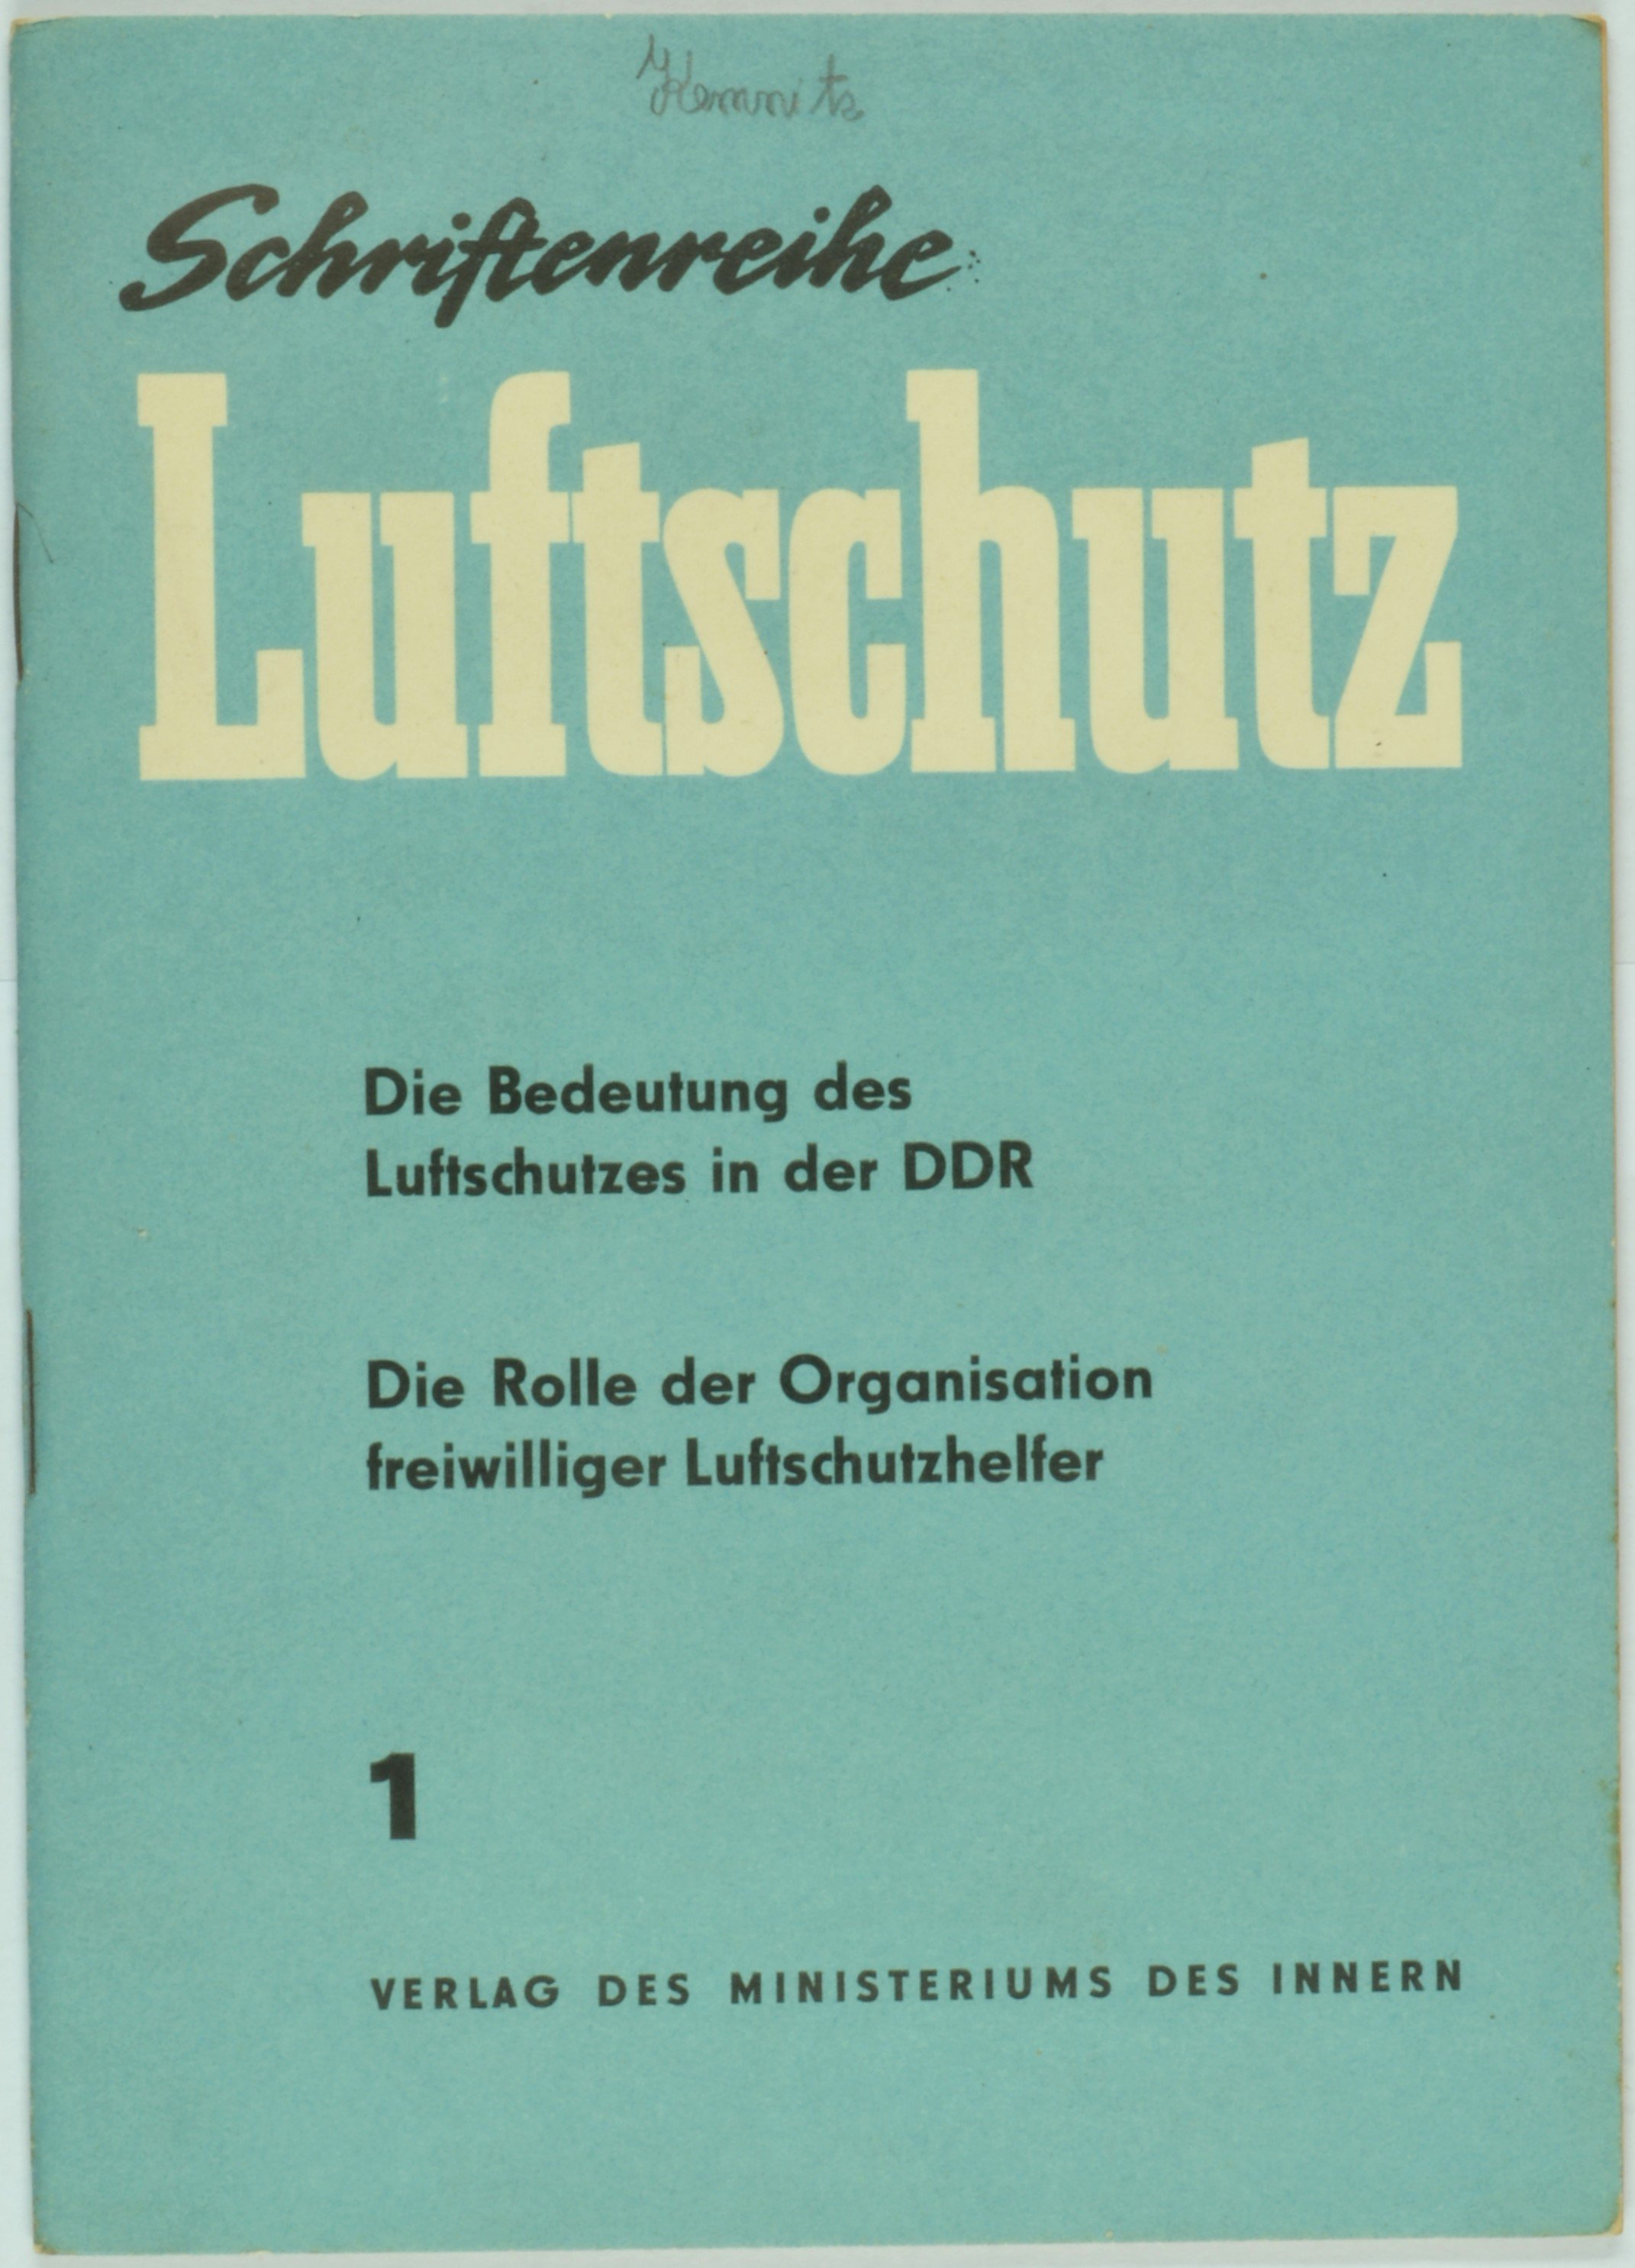 Broschüre "Schriftenreihe Luftschutz" 1 (DDR Geschichtsmuseum im Dokumentationszentrum Perleberg CC BY-SA)